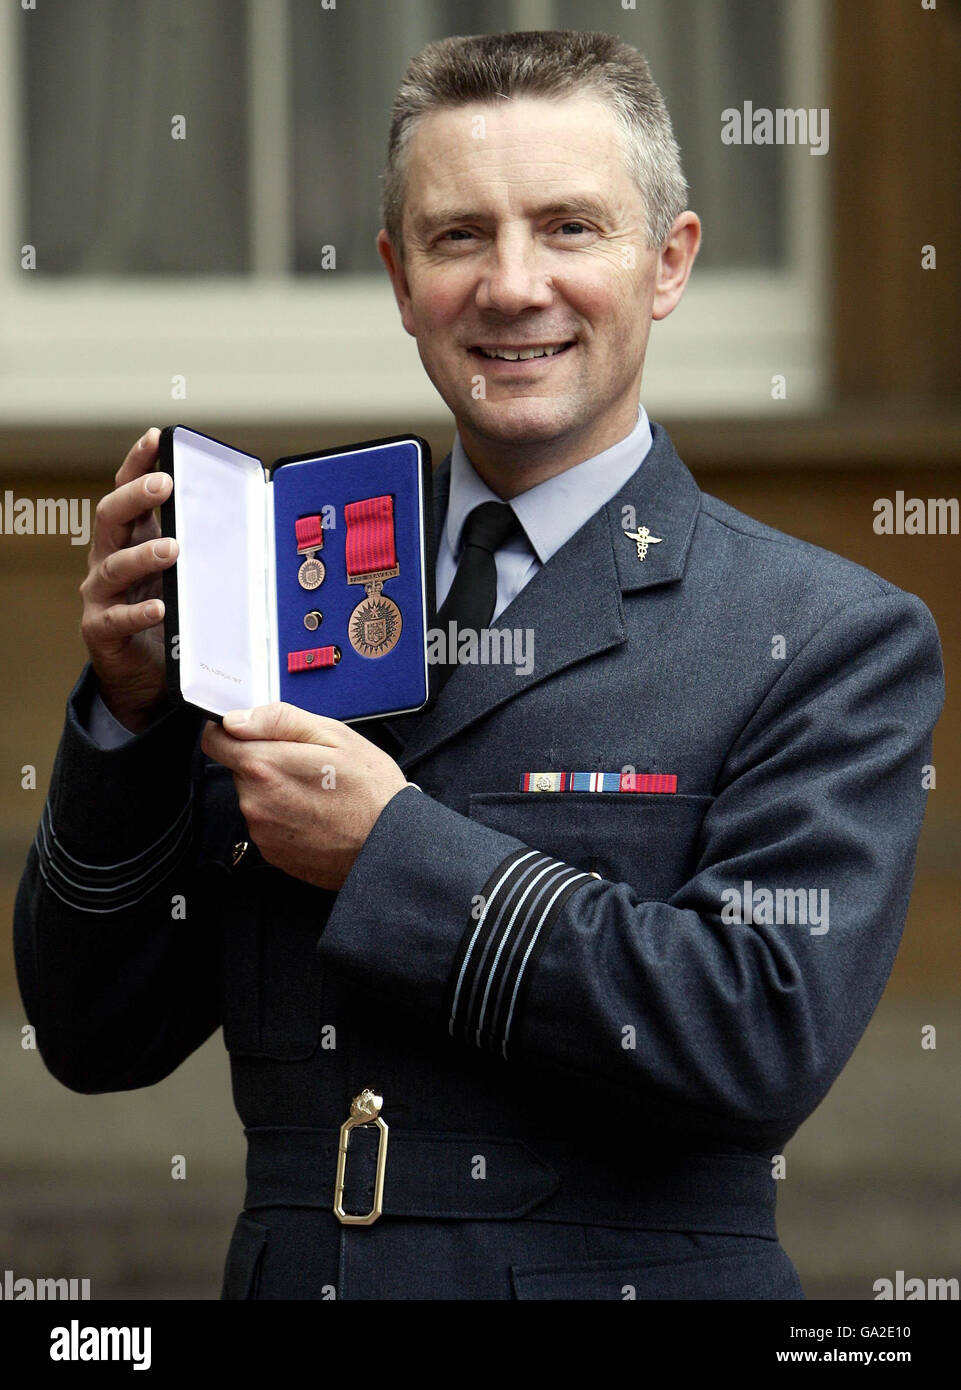 Le commandant de l'aile Craig Staniforth et sa Médaille de la bravoure australienne pour services après les attentats à la bombe de Londres le 7 juillet 2005, à Buckingham Palace, Londres. Banque D'Images